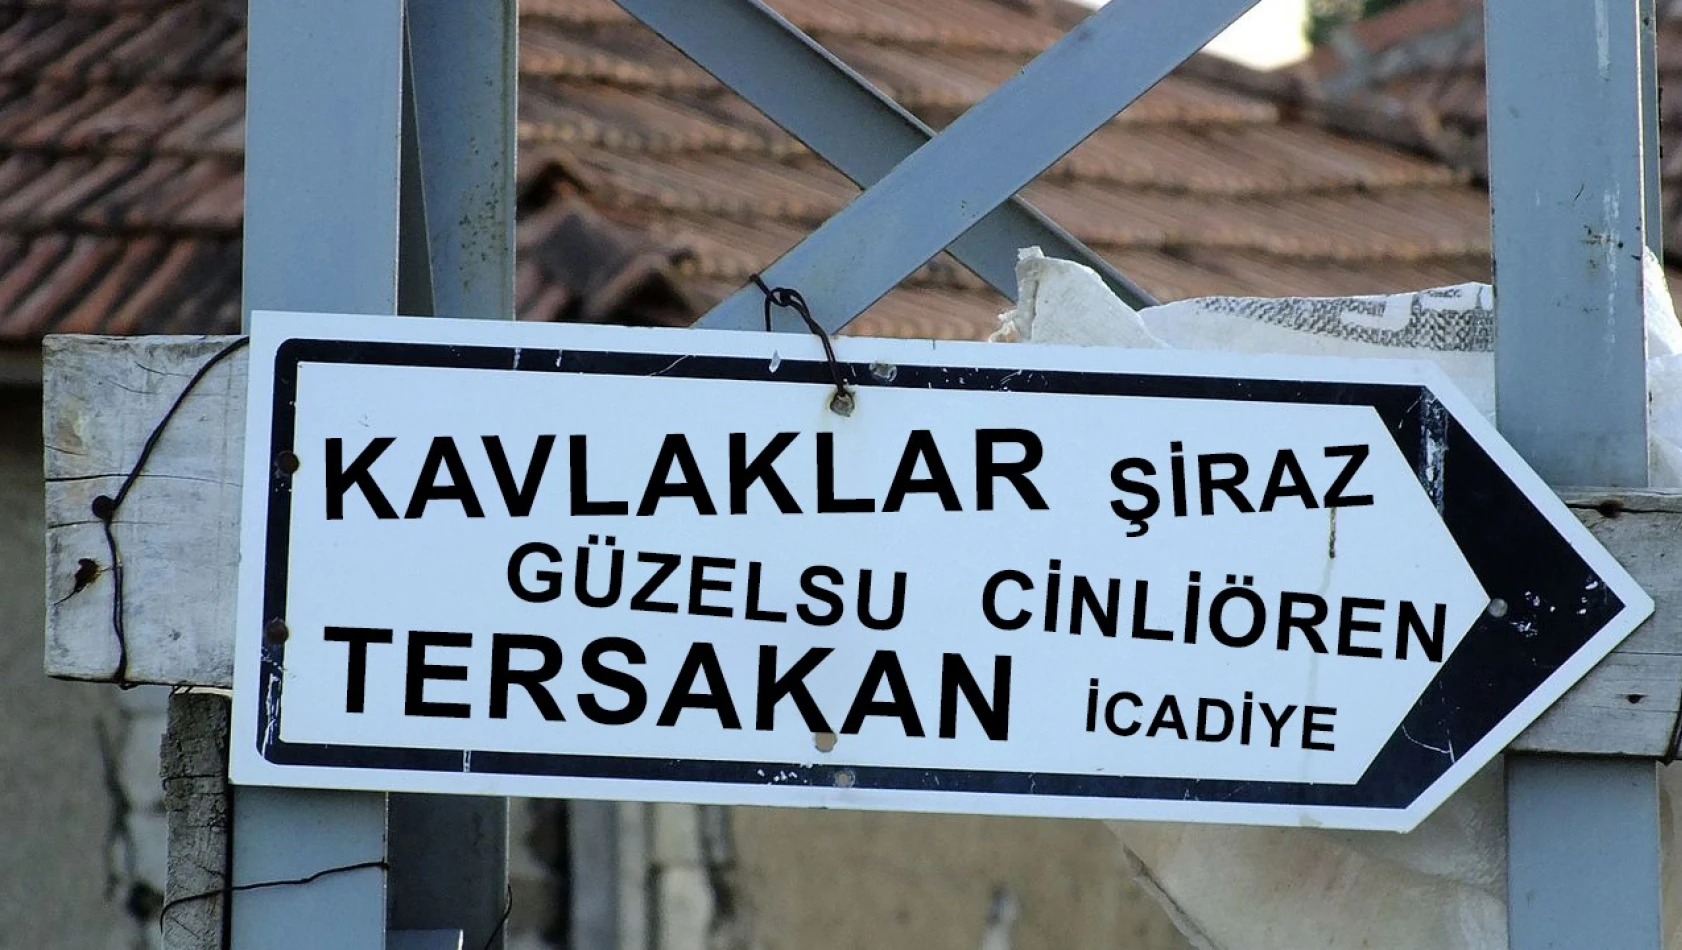 Duyanları şaşırtan Kayseri'nin en ilginç köy isimleri - Süvegenler, Keşlik, Tersakan… Bakın daha neler var?